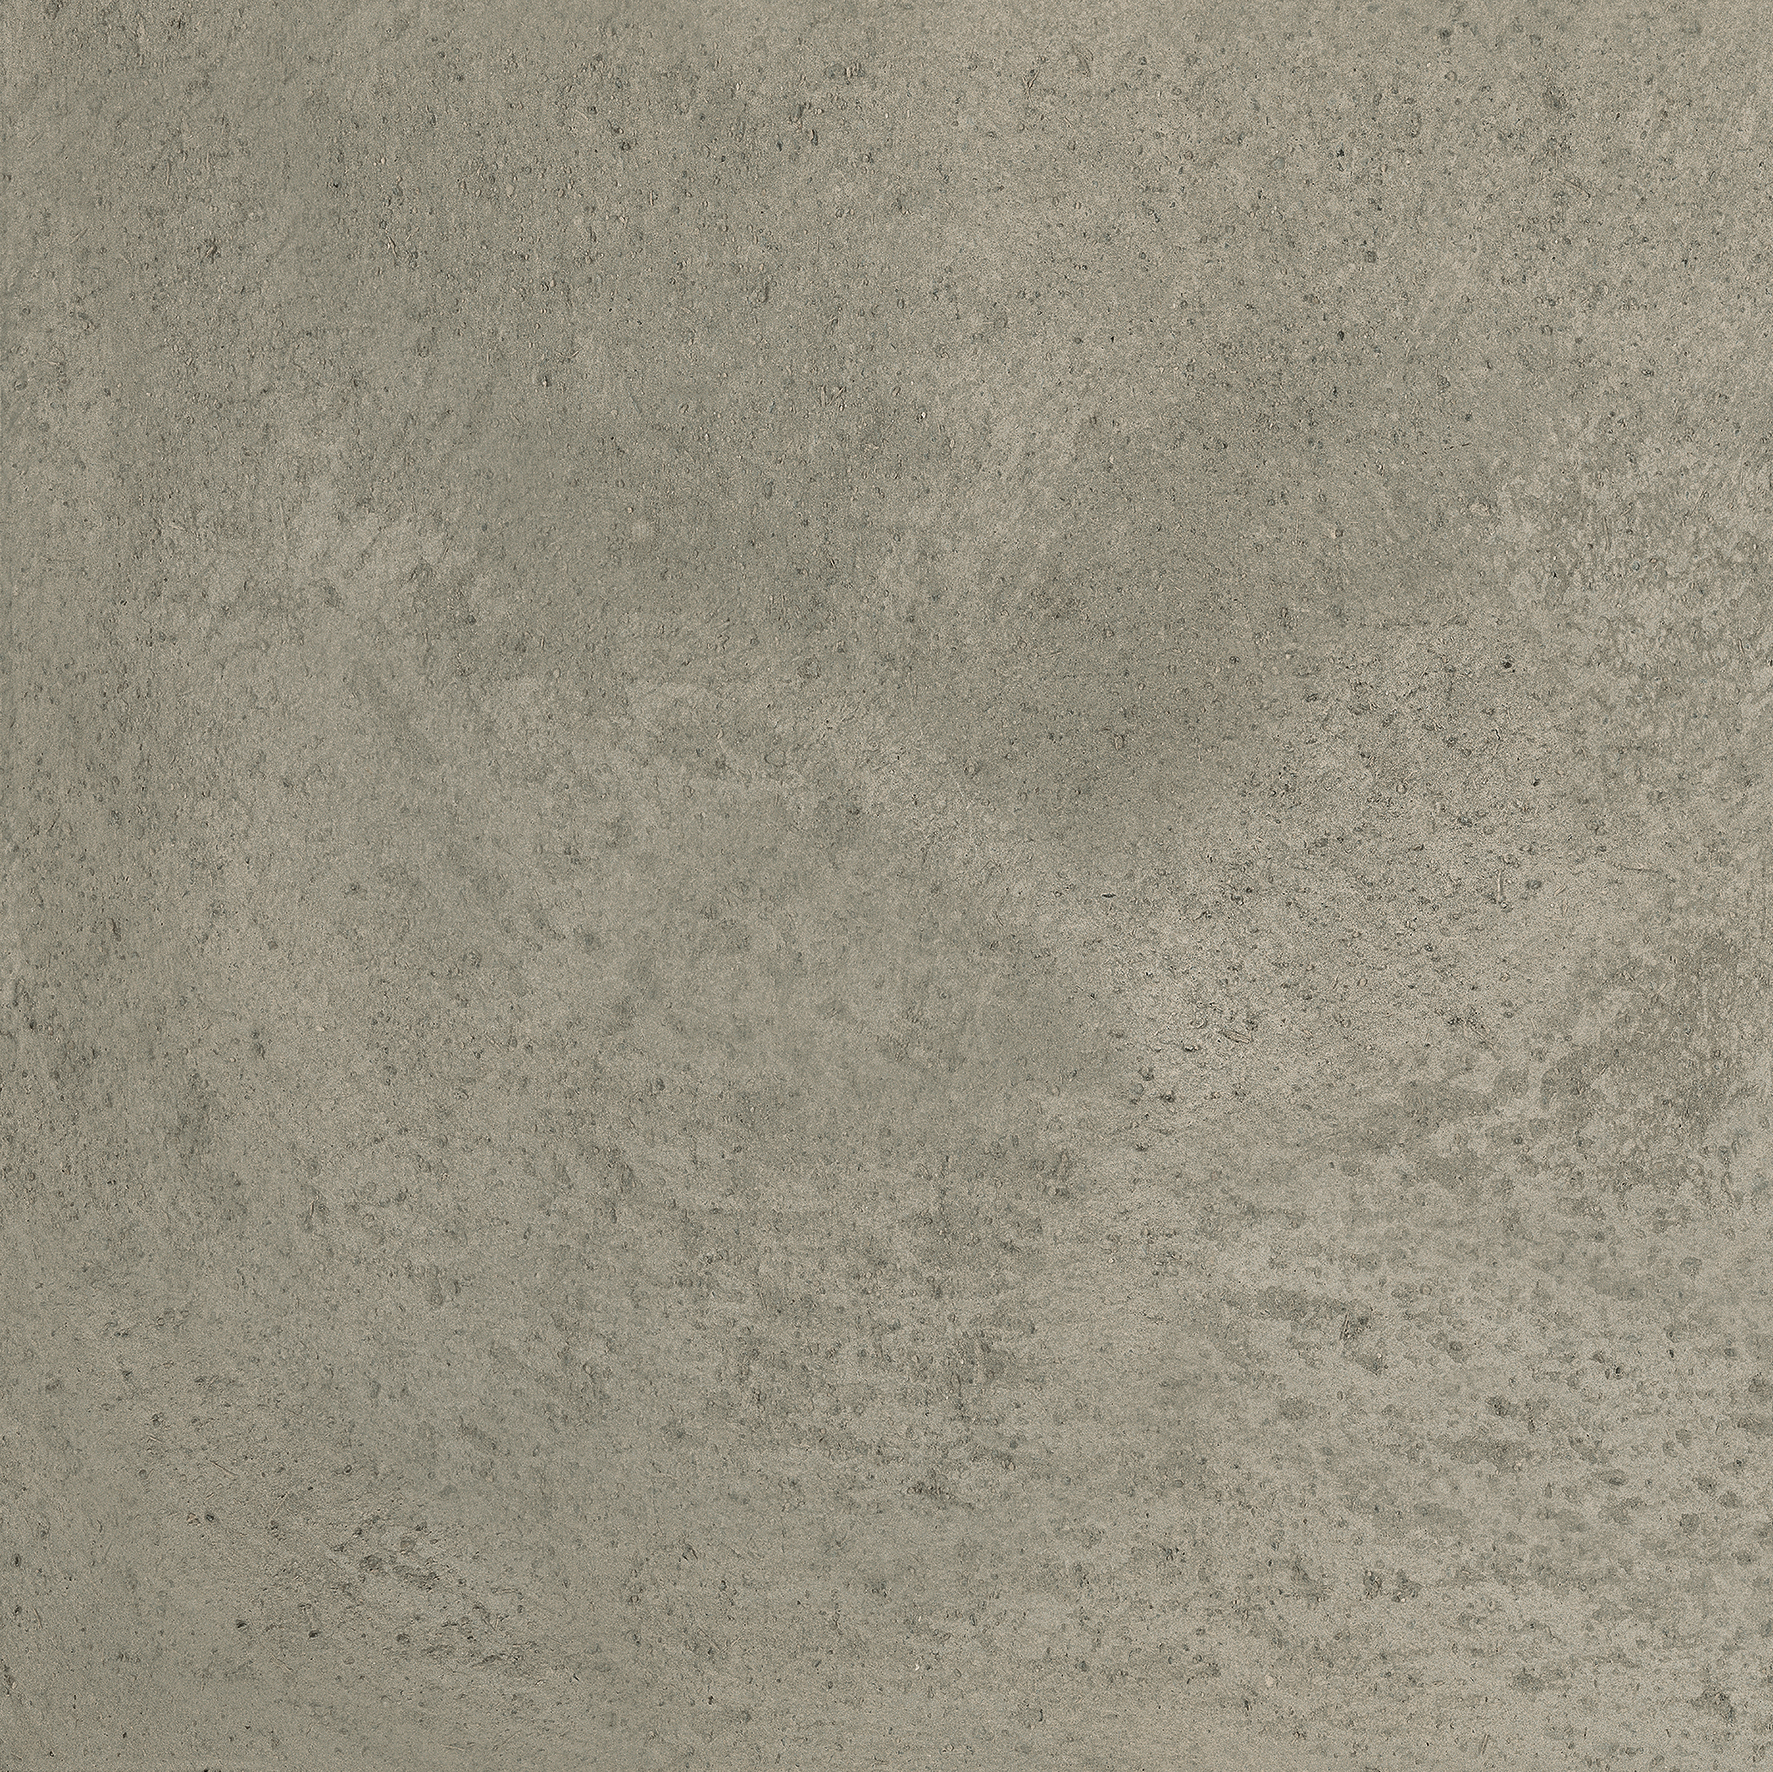 Bodenfliese,Wandfliese Florim Maps Of Cerim Dark Grey Matt – Naturale Dark Grey 747138 matt natur 60x60cm rektifiziert 9mm